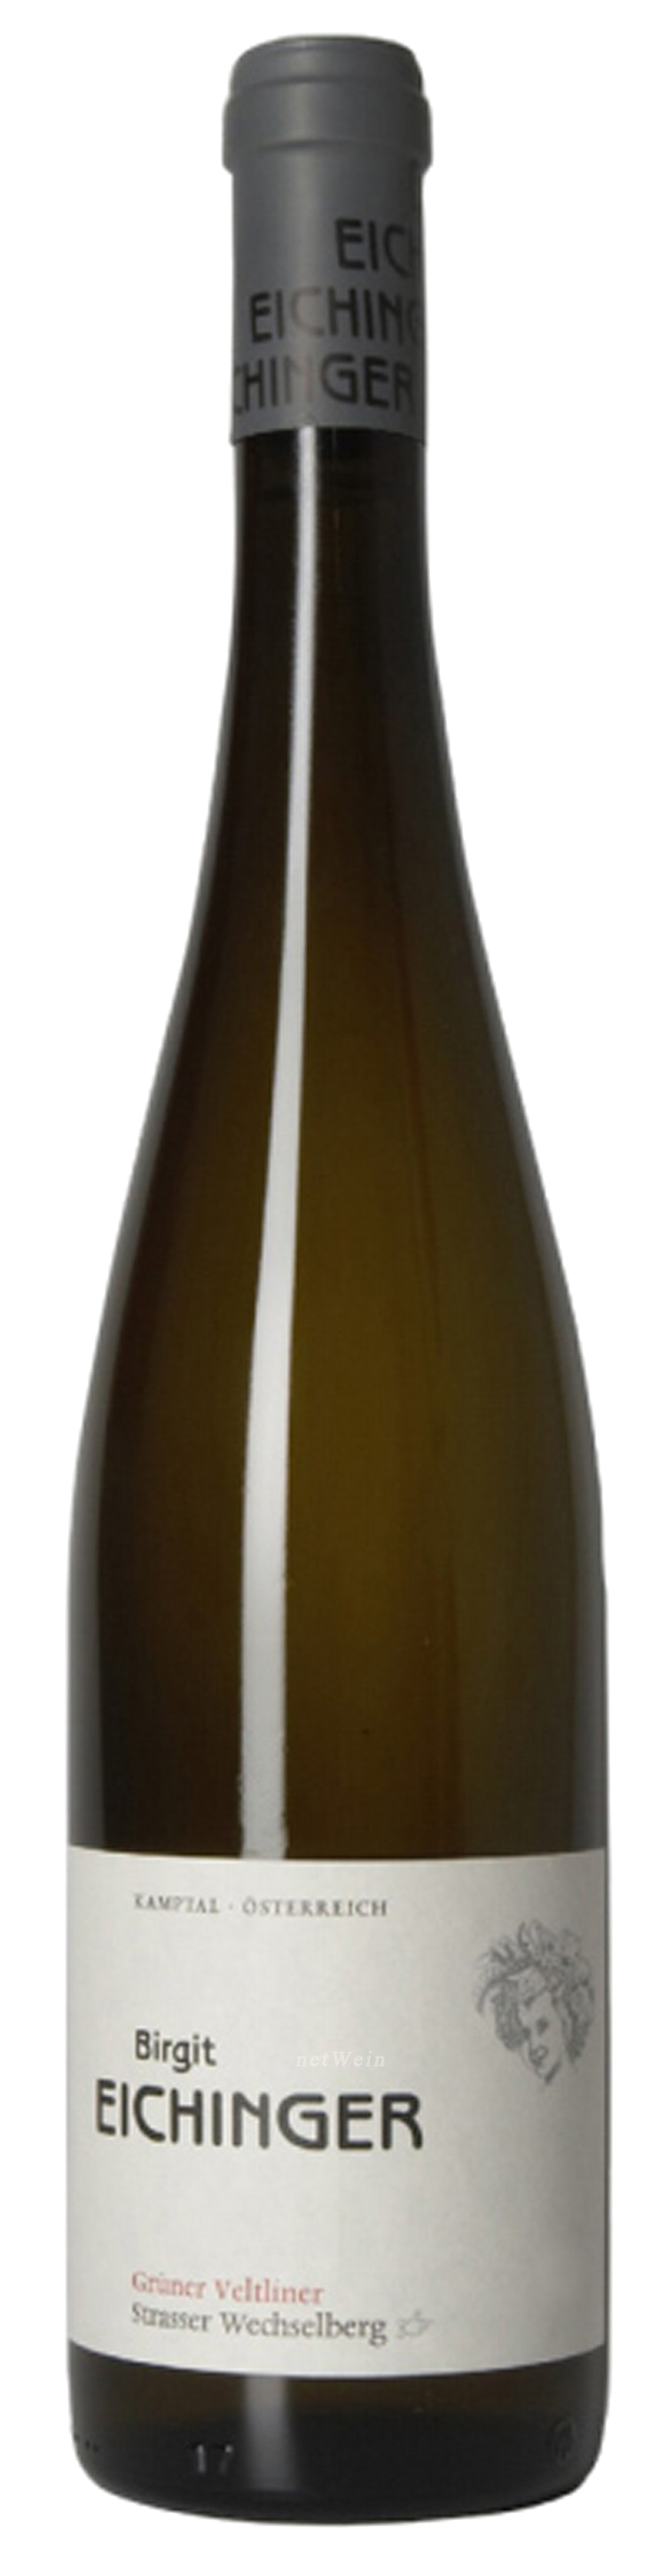 Bottle shot of 2017 Grüner Veltliner Strasser Wechselberg